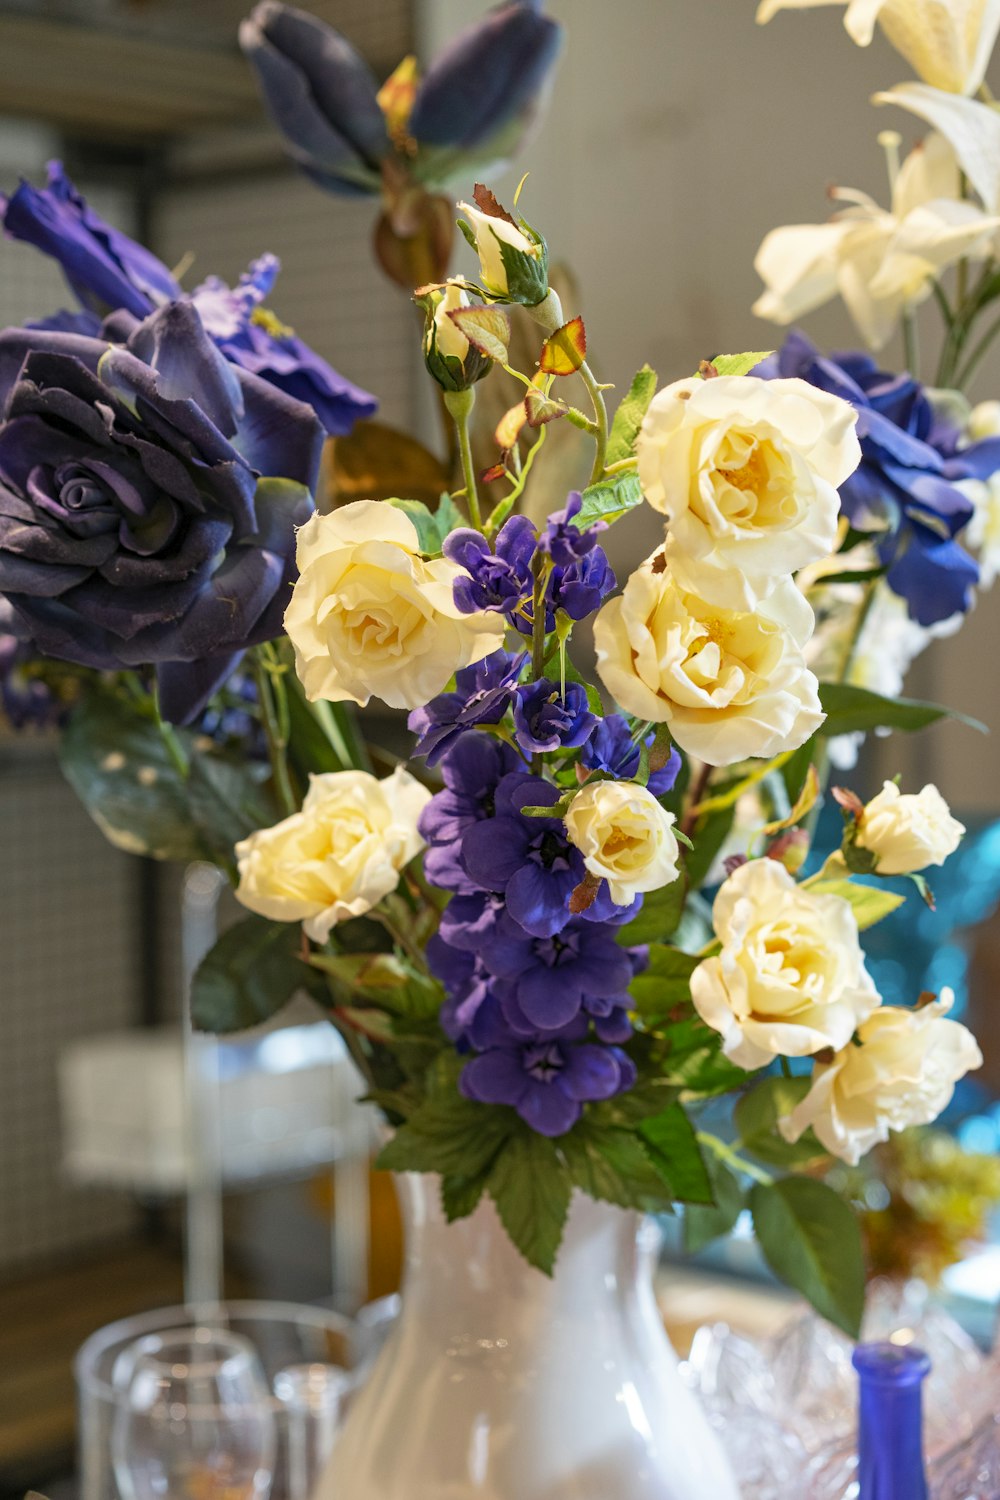 青と黄色の花でいっぱいの白い花瓶